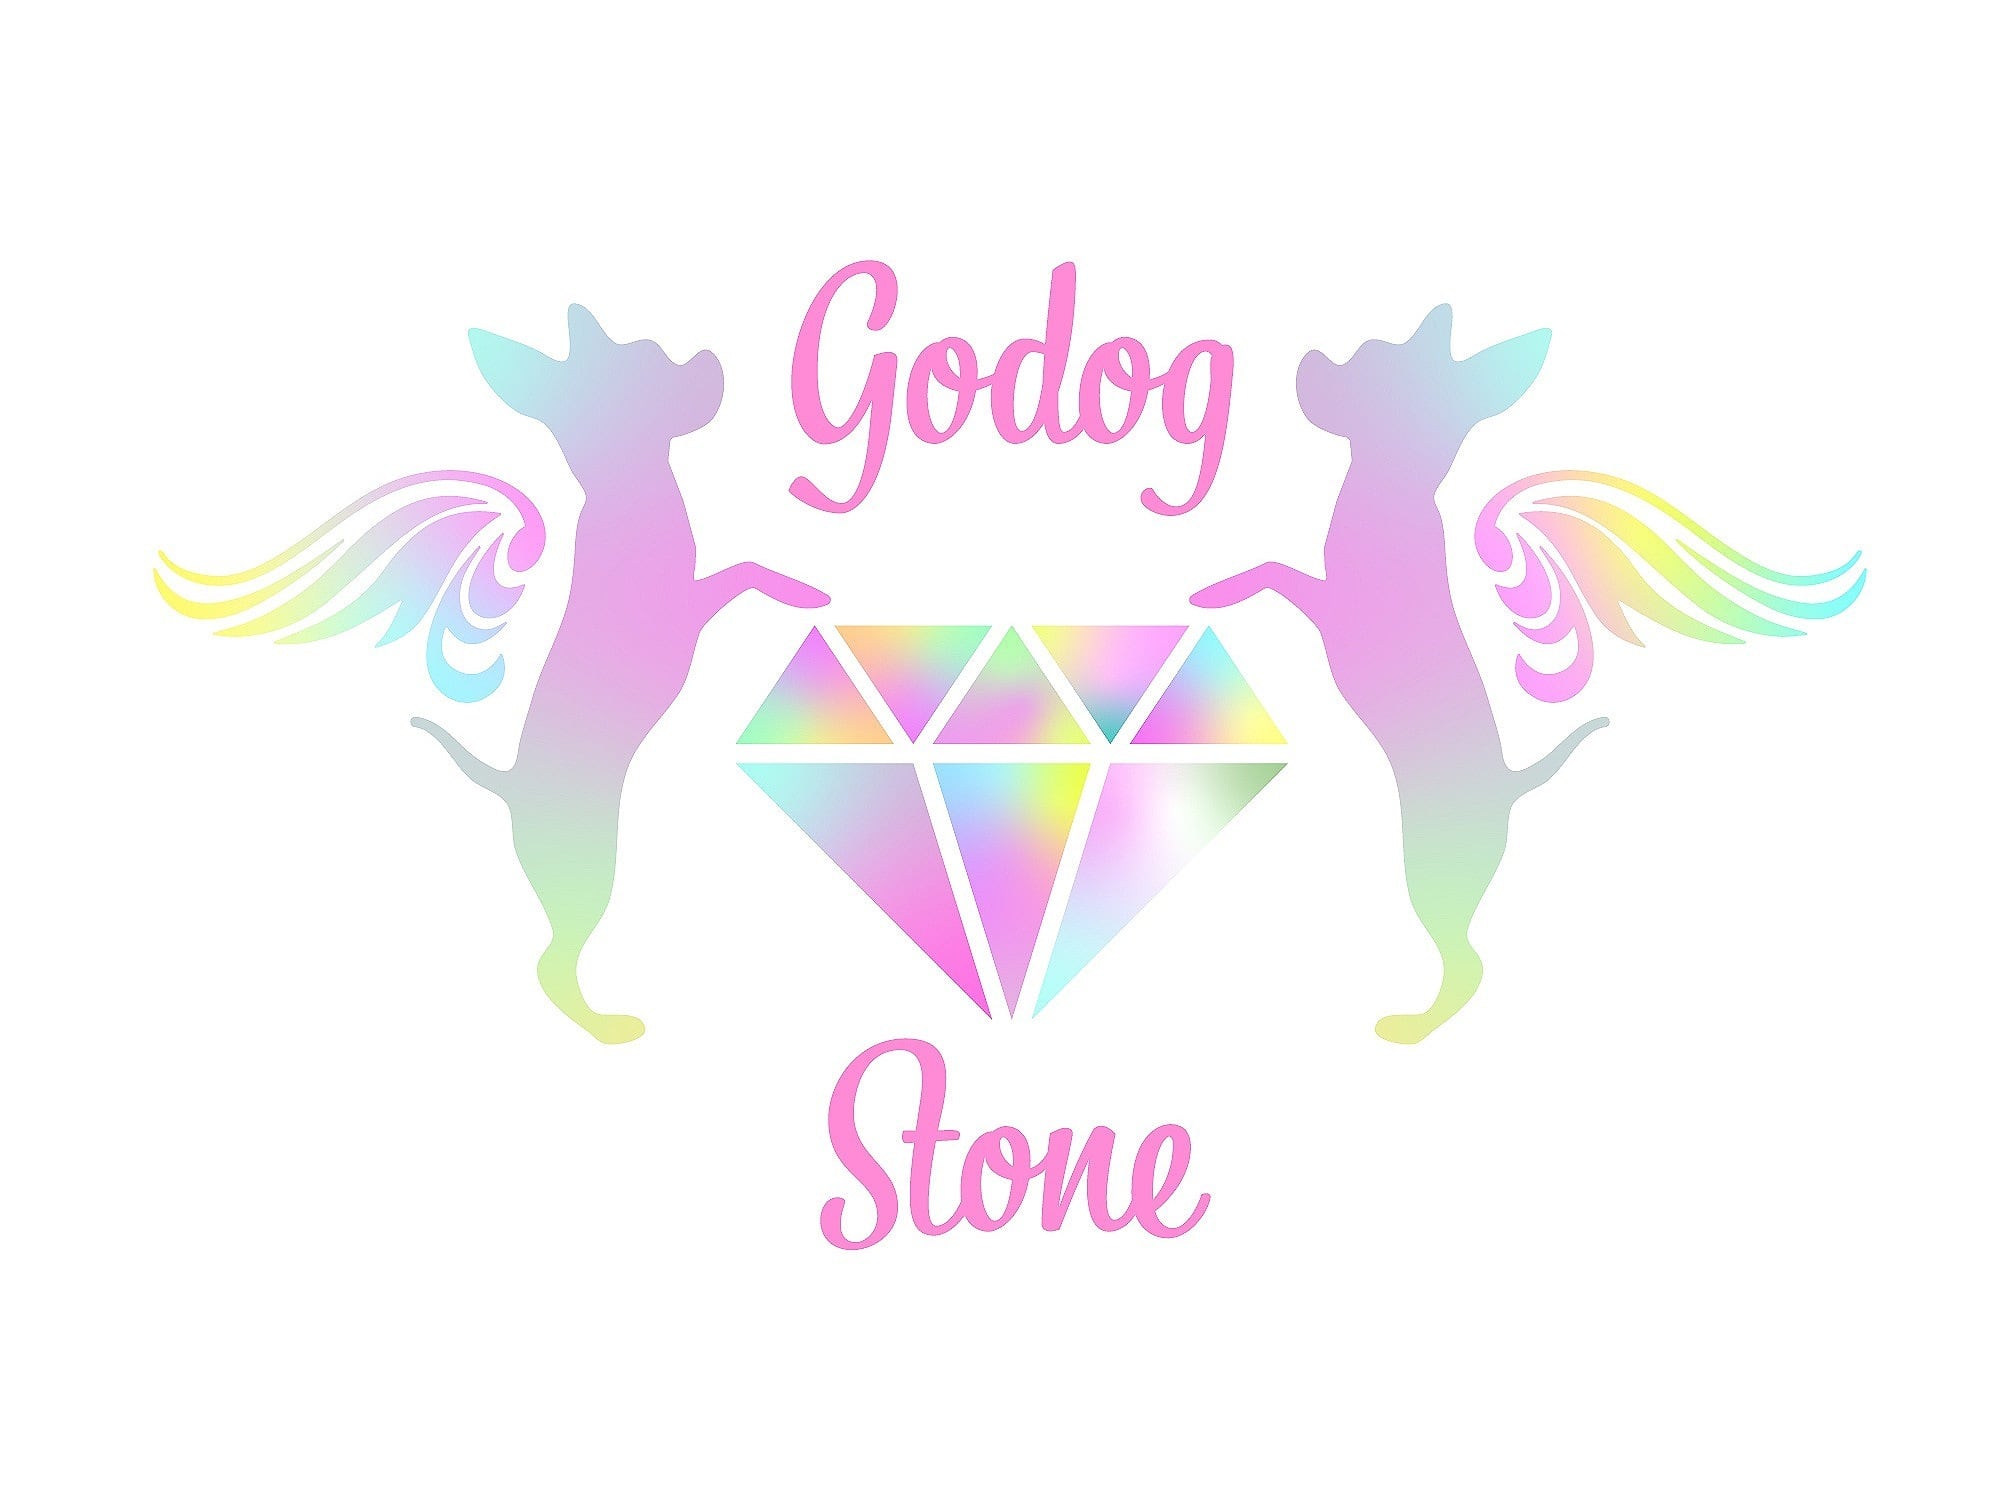 godog’stone